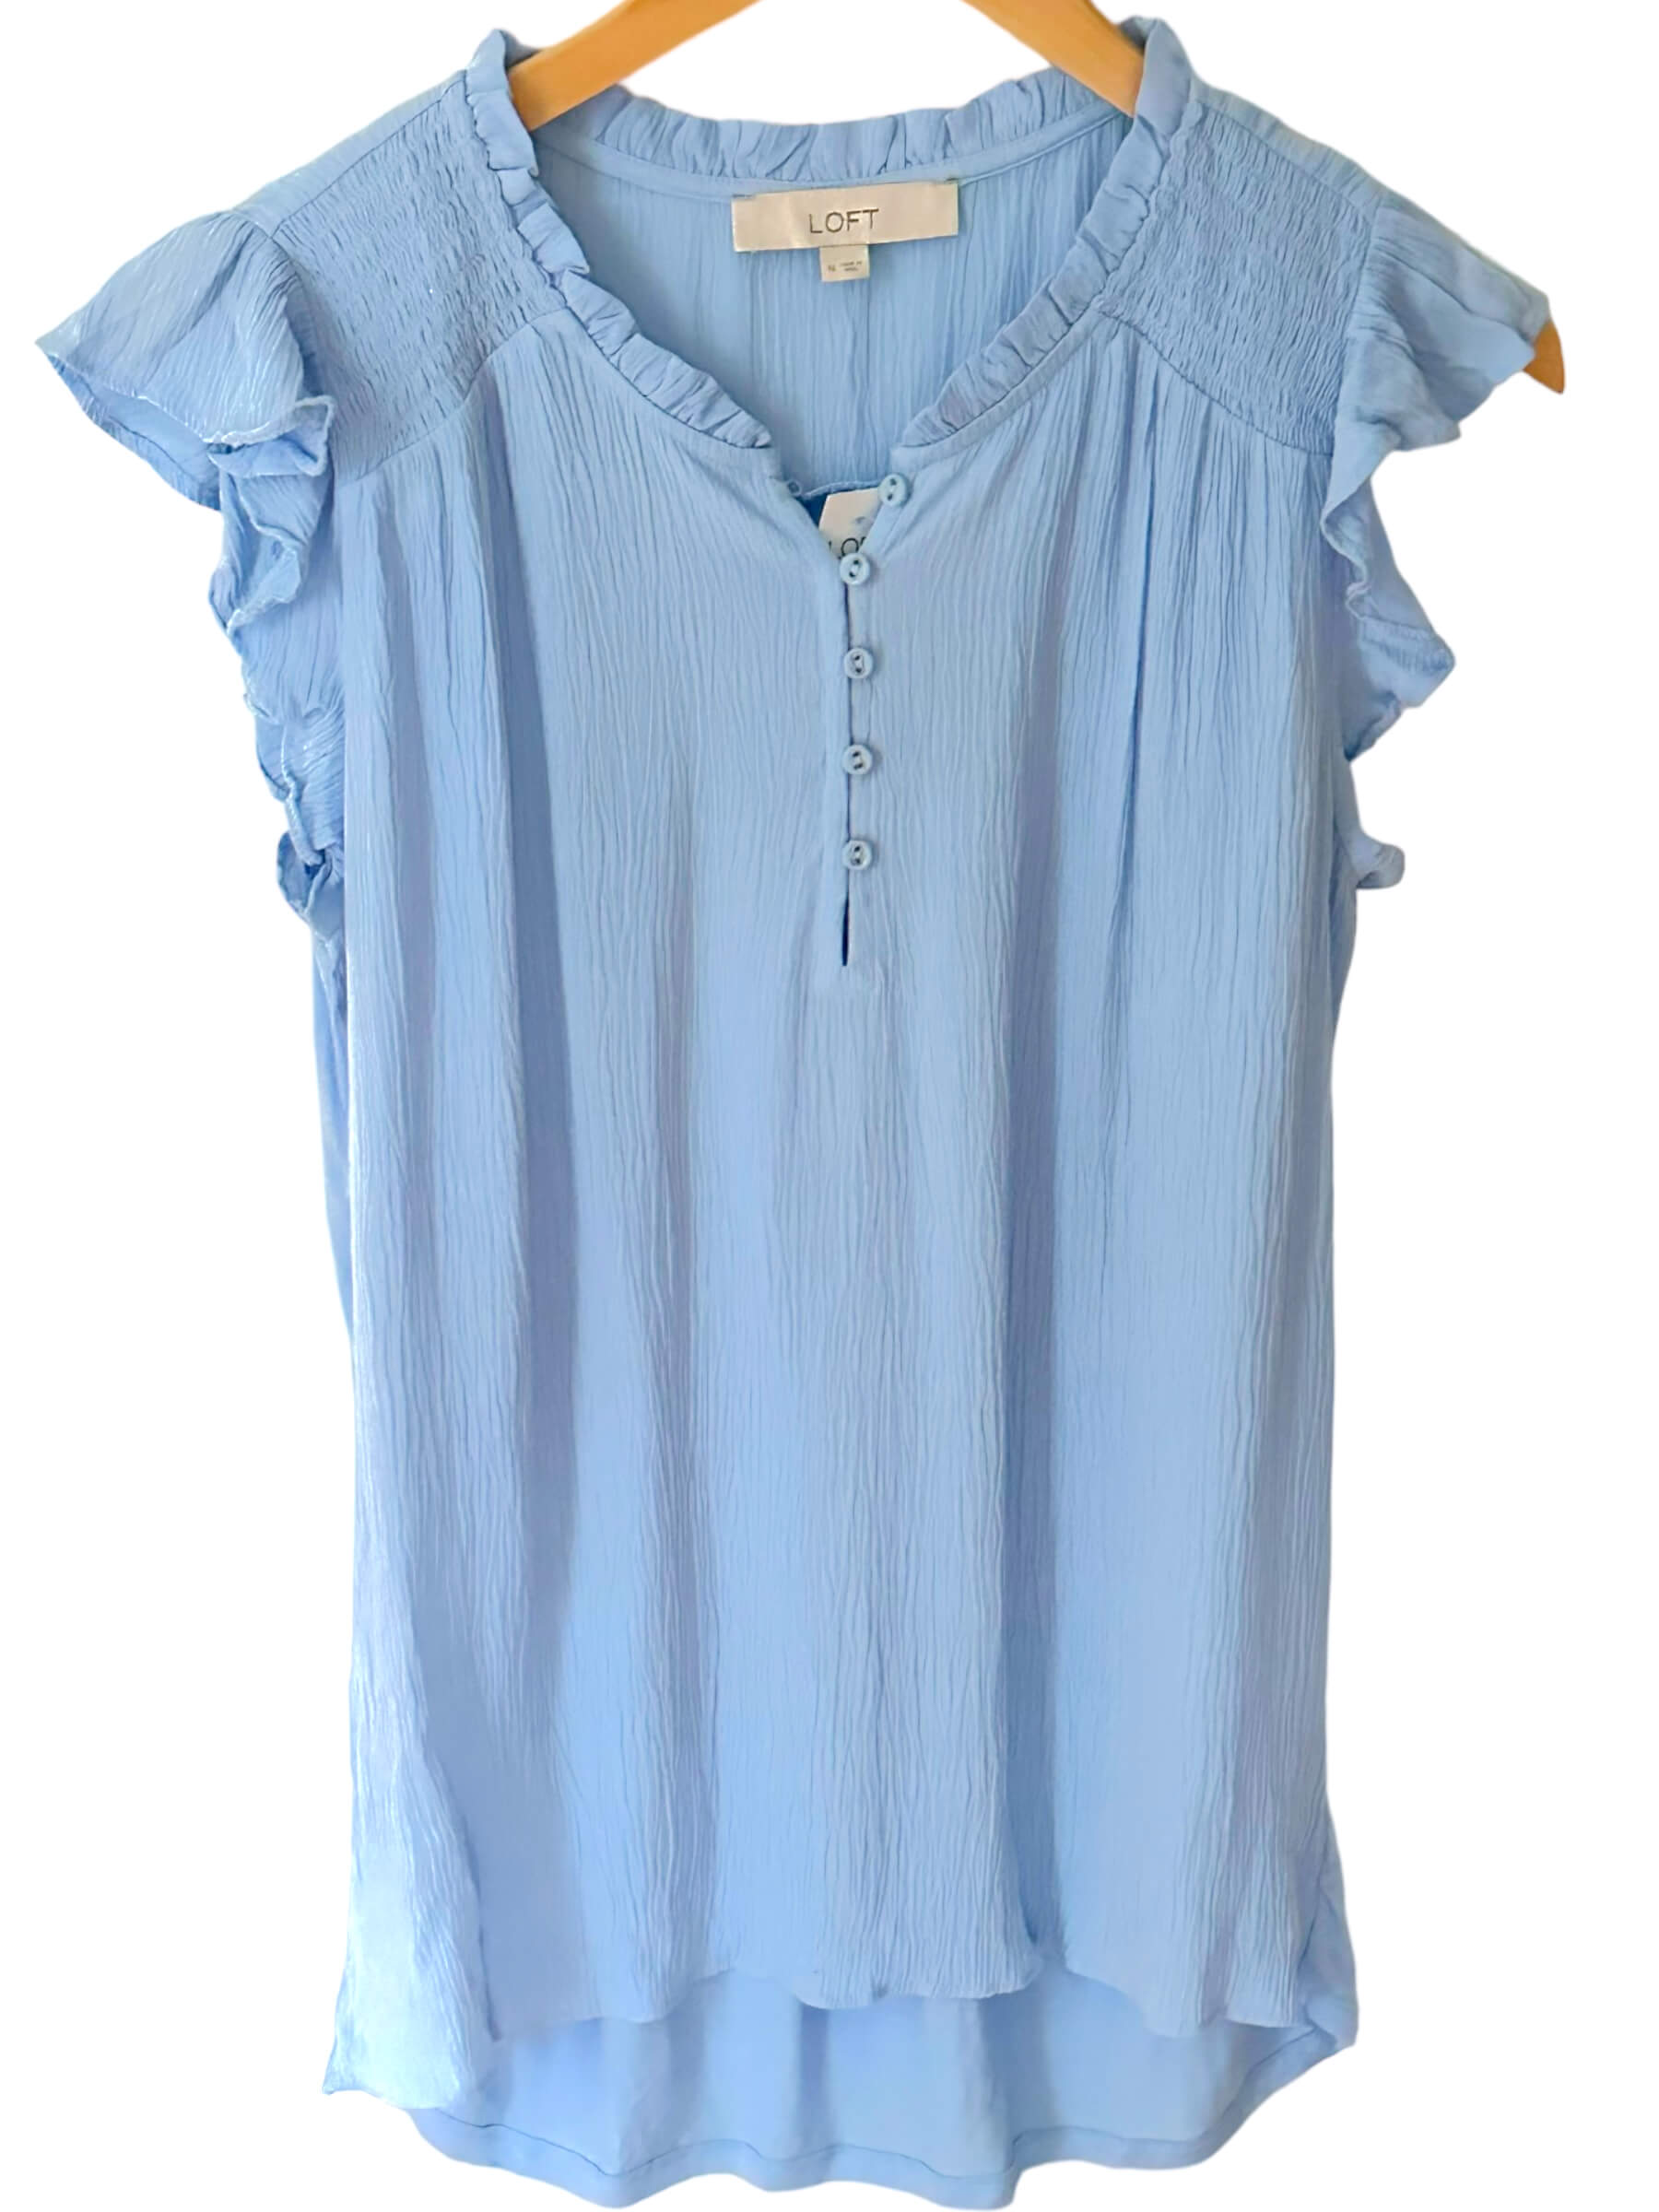 Soft Summer ANN TAYLOR LOFT  breezy blue sleeveless ruffle button mixed media top